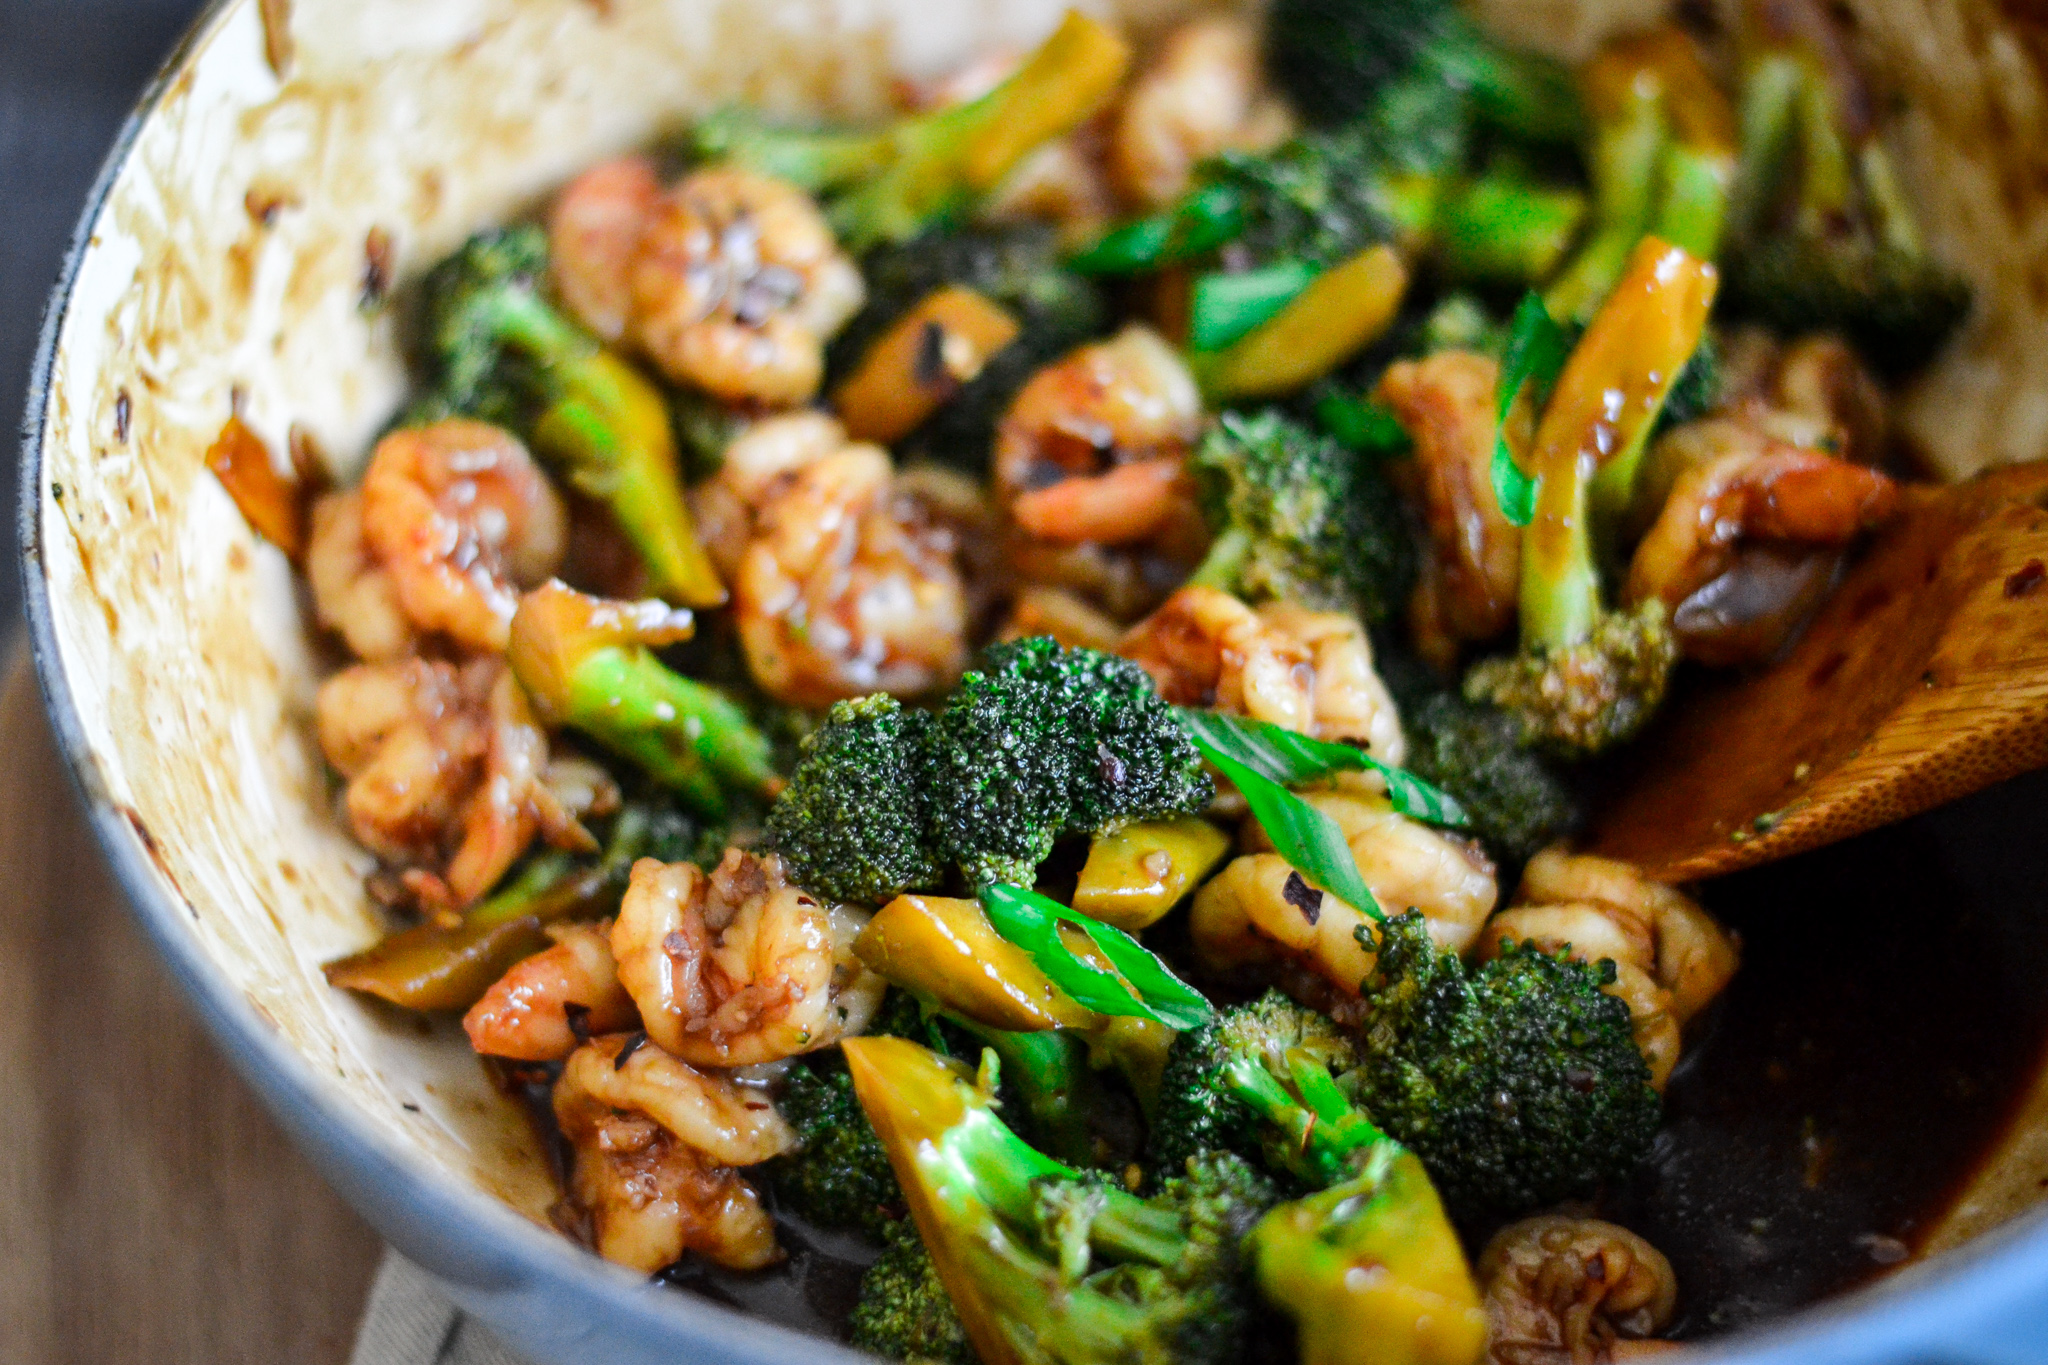 Shrimp and broccoli stir fry - Alica's Pepperpot